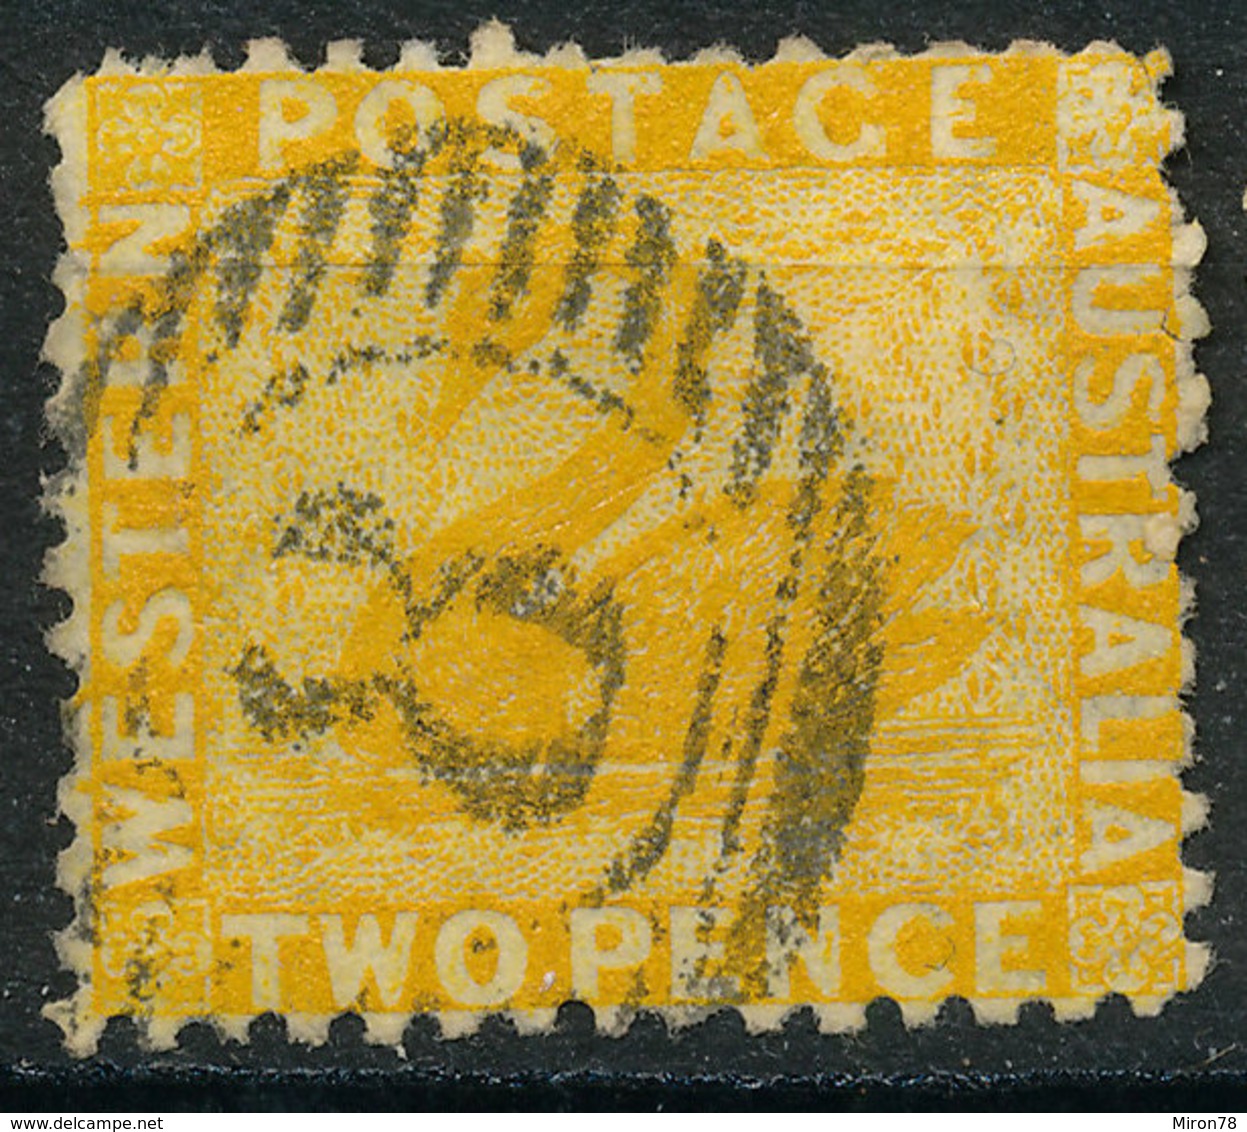 Stamp Australia 2p Used Lot66 - Used Stamps